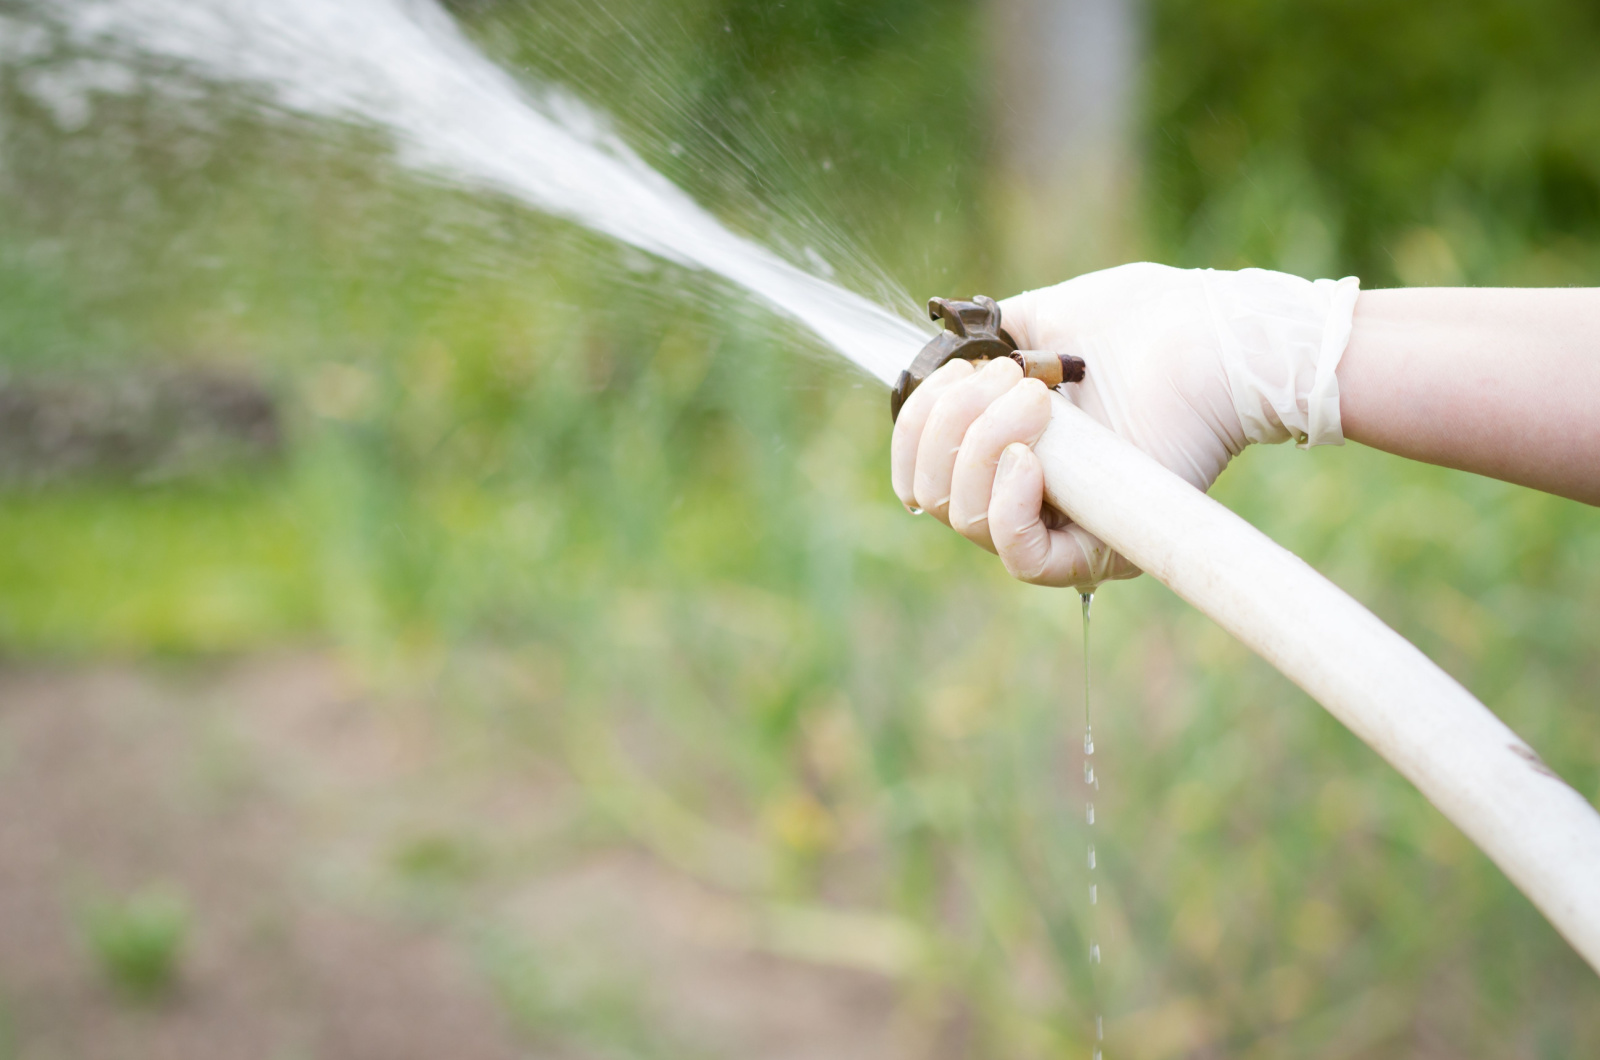 high pressure water hose in garden